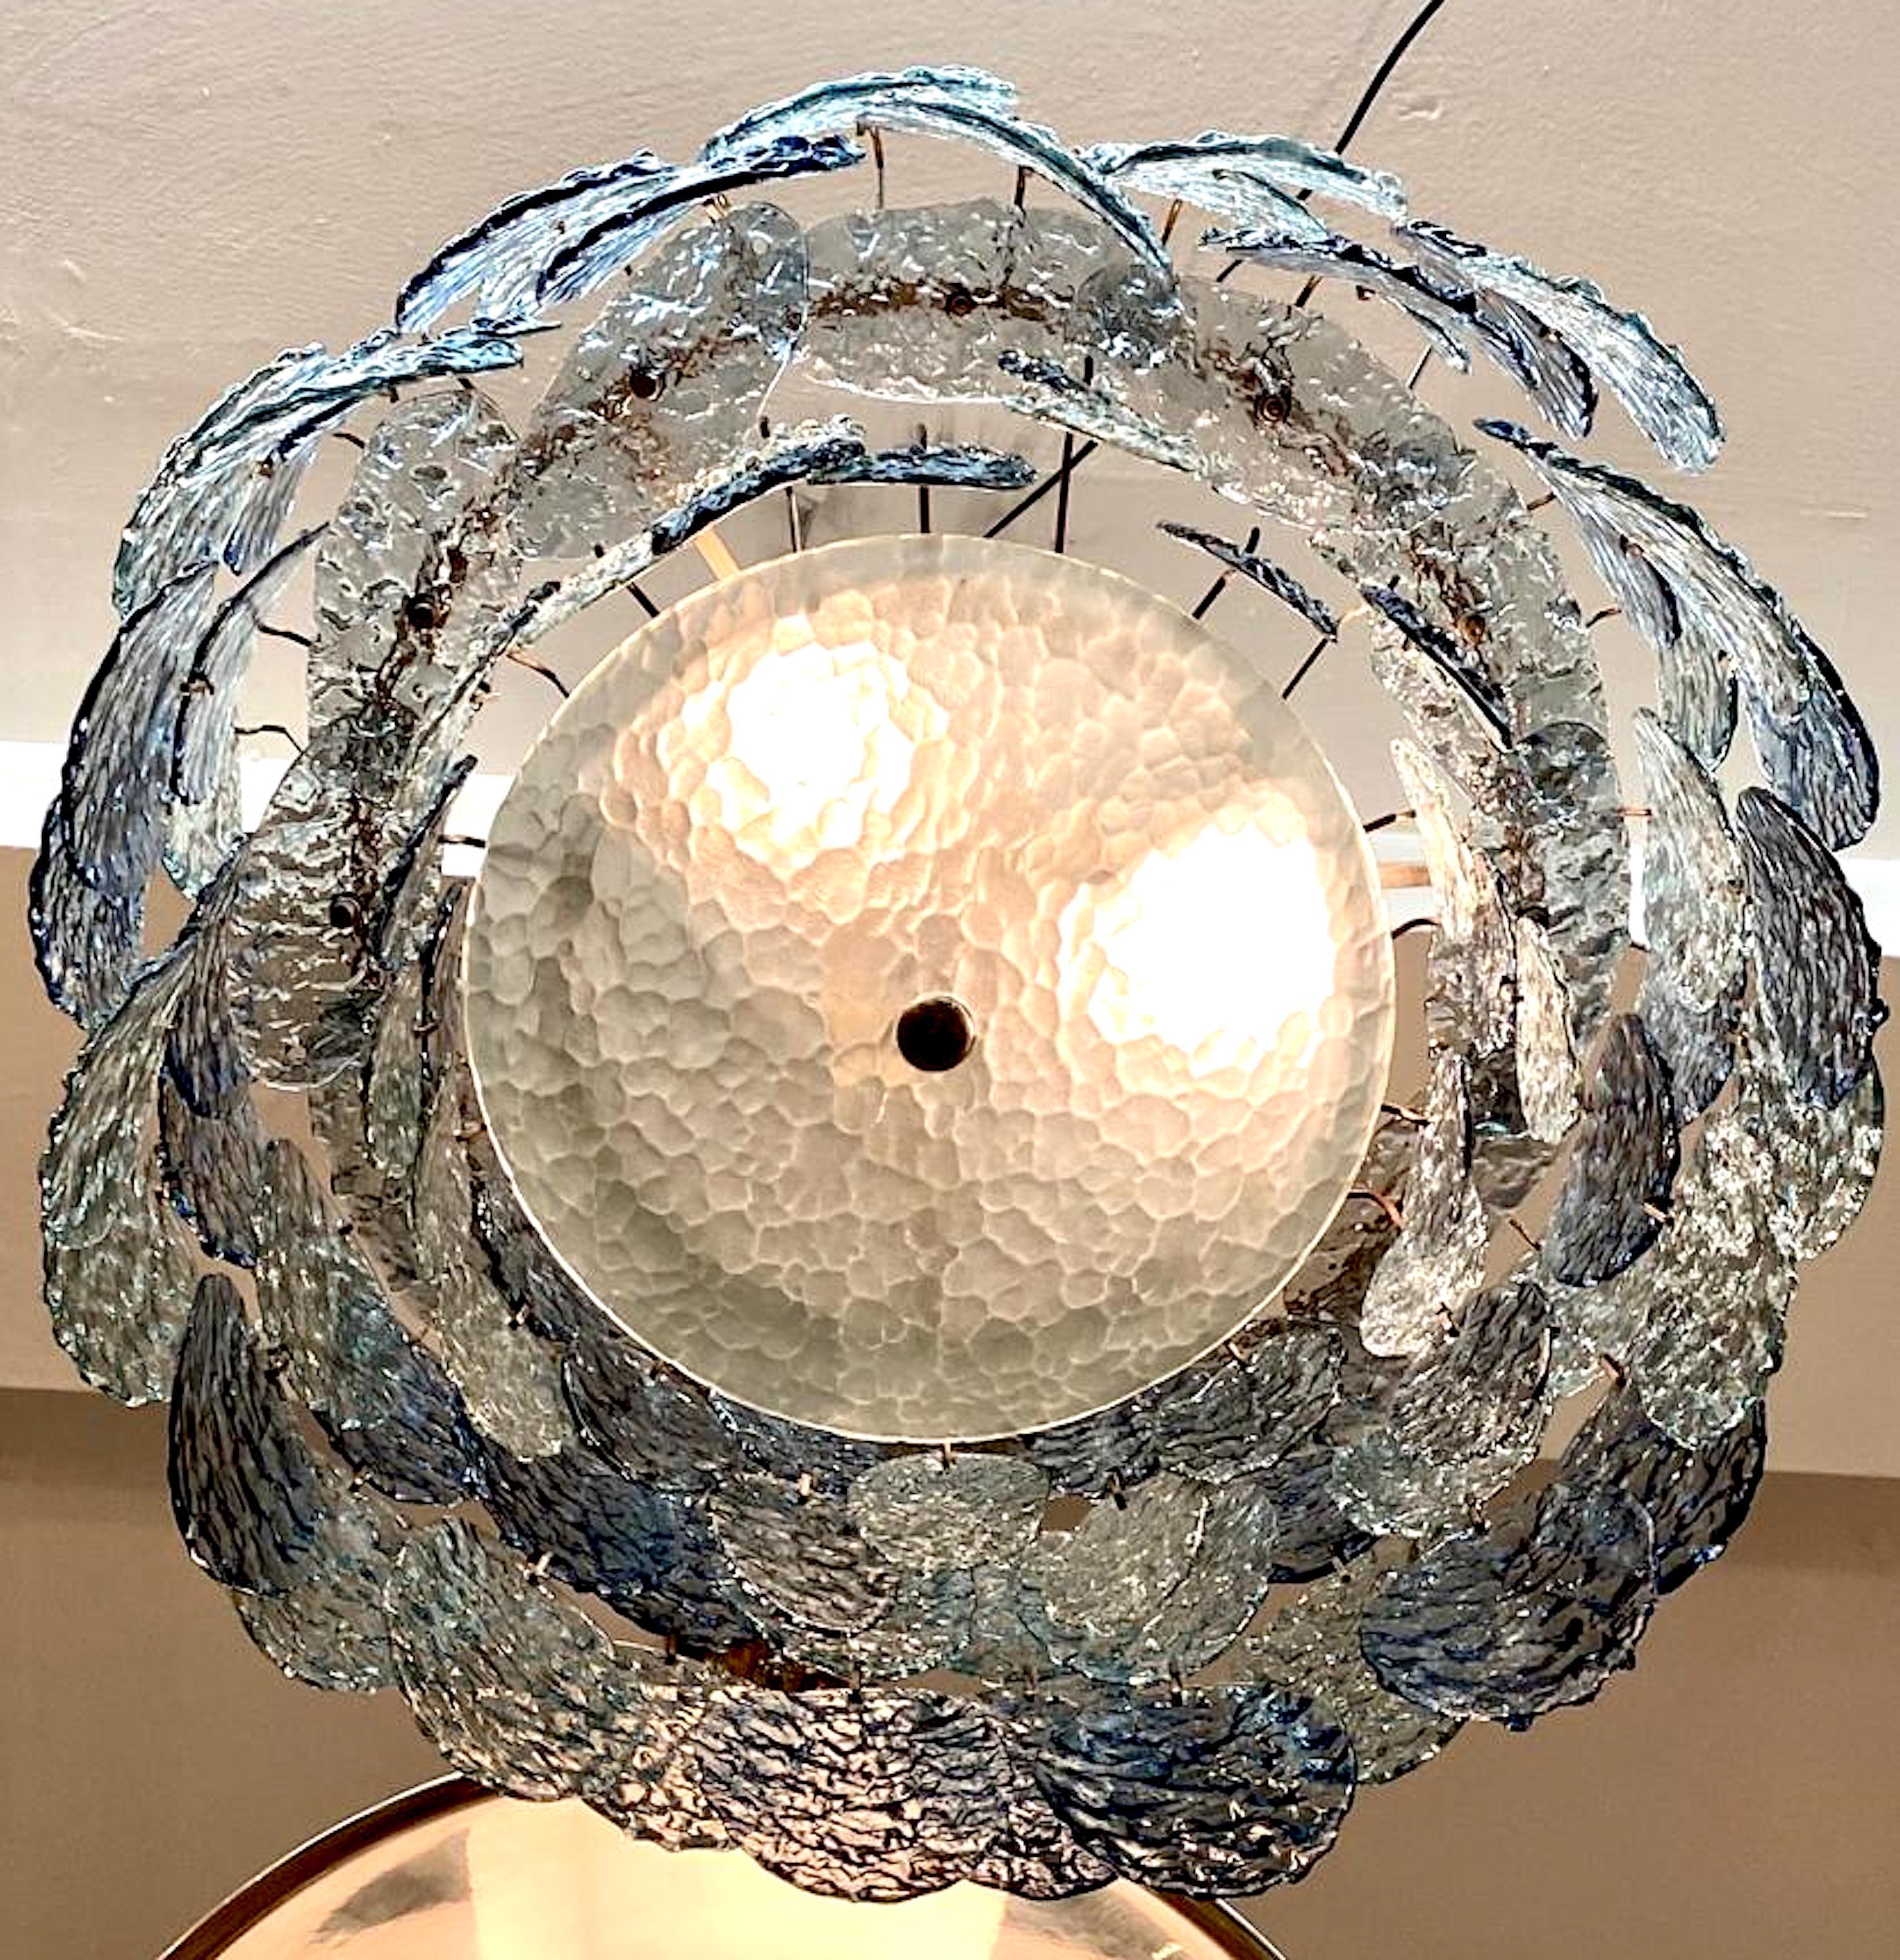 Magnifique lustre à disque en verre bleu foncé et fumé du début des années 1970, fabriqué à Murano, en Italie. Il a été conçu par le célèbre designer italien Gino Vistosi pour sa société d'éclairage Vistosi. Le lustre présente des disques ovales